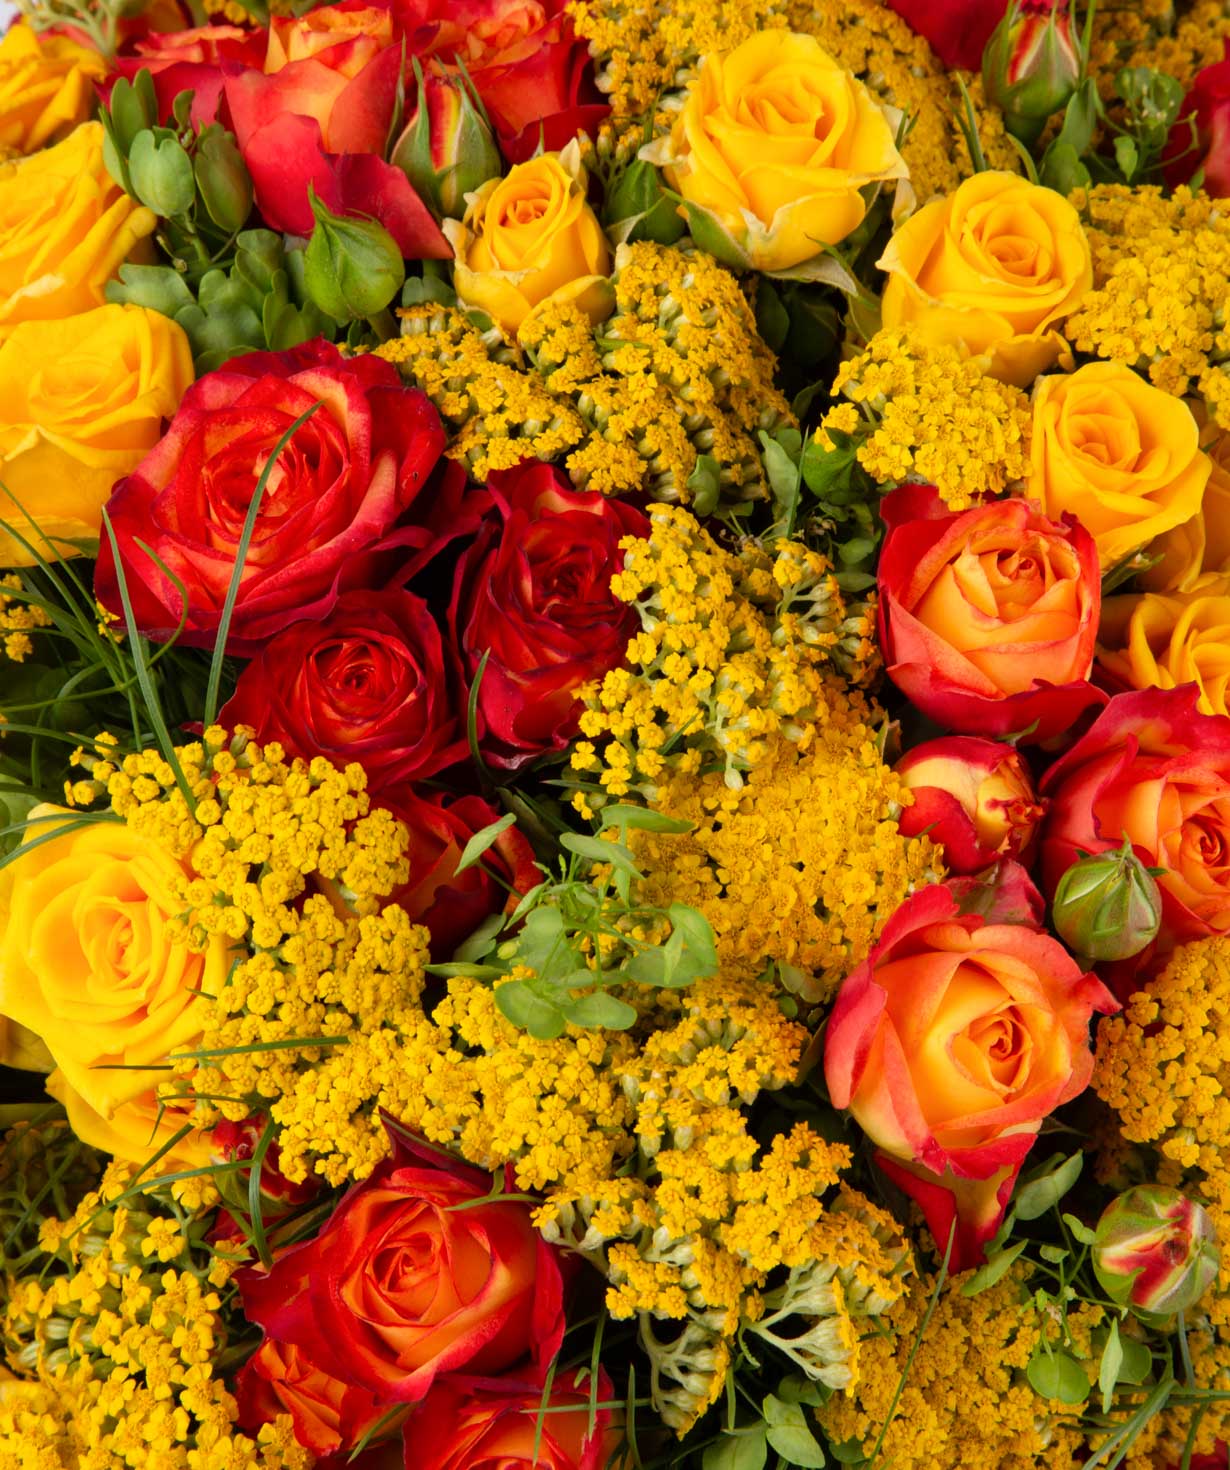 Ծաղկեփունջ «Օրլանդո» պիոն վարդերով և ալսթրոմերիաներով